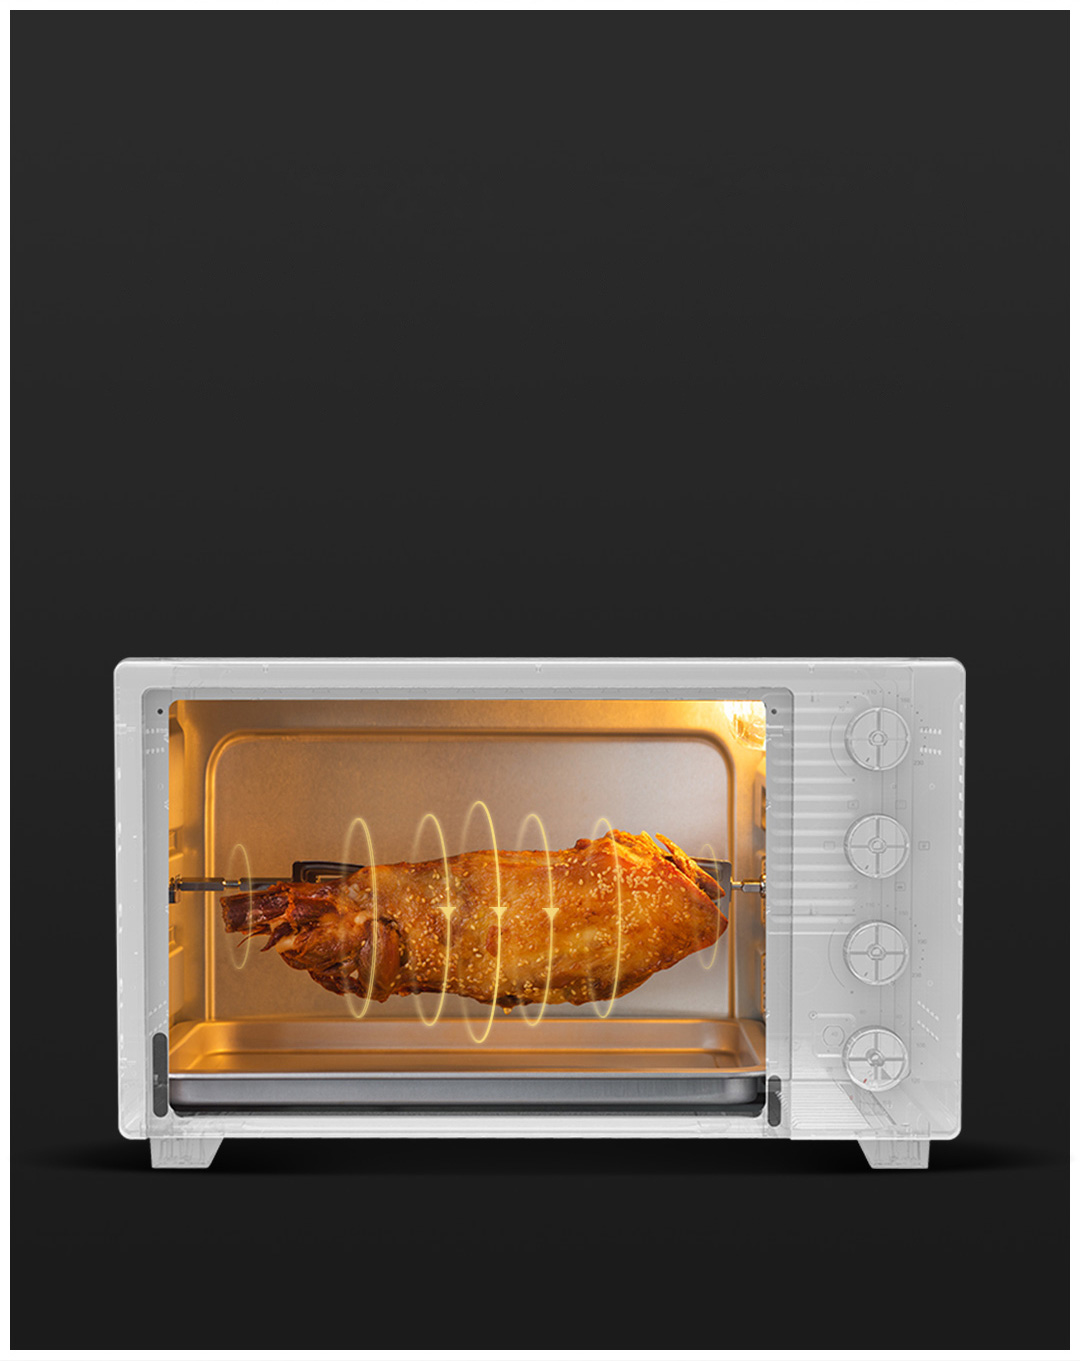 Thanh xoay đã tích hợp sẵn, máy sử dụng chức năng lưu thông không khí nóng, làm bạn có thể nướng những miếng thịt lớn vừa với khung máy, bên ngoài chín bên trong ăn ngon ngọt